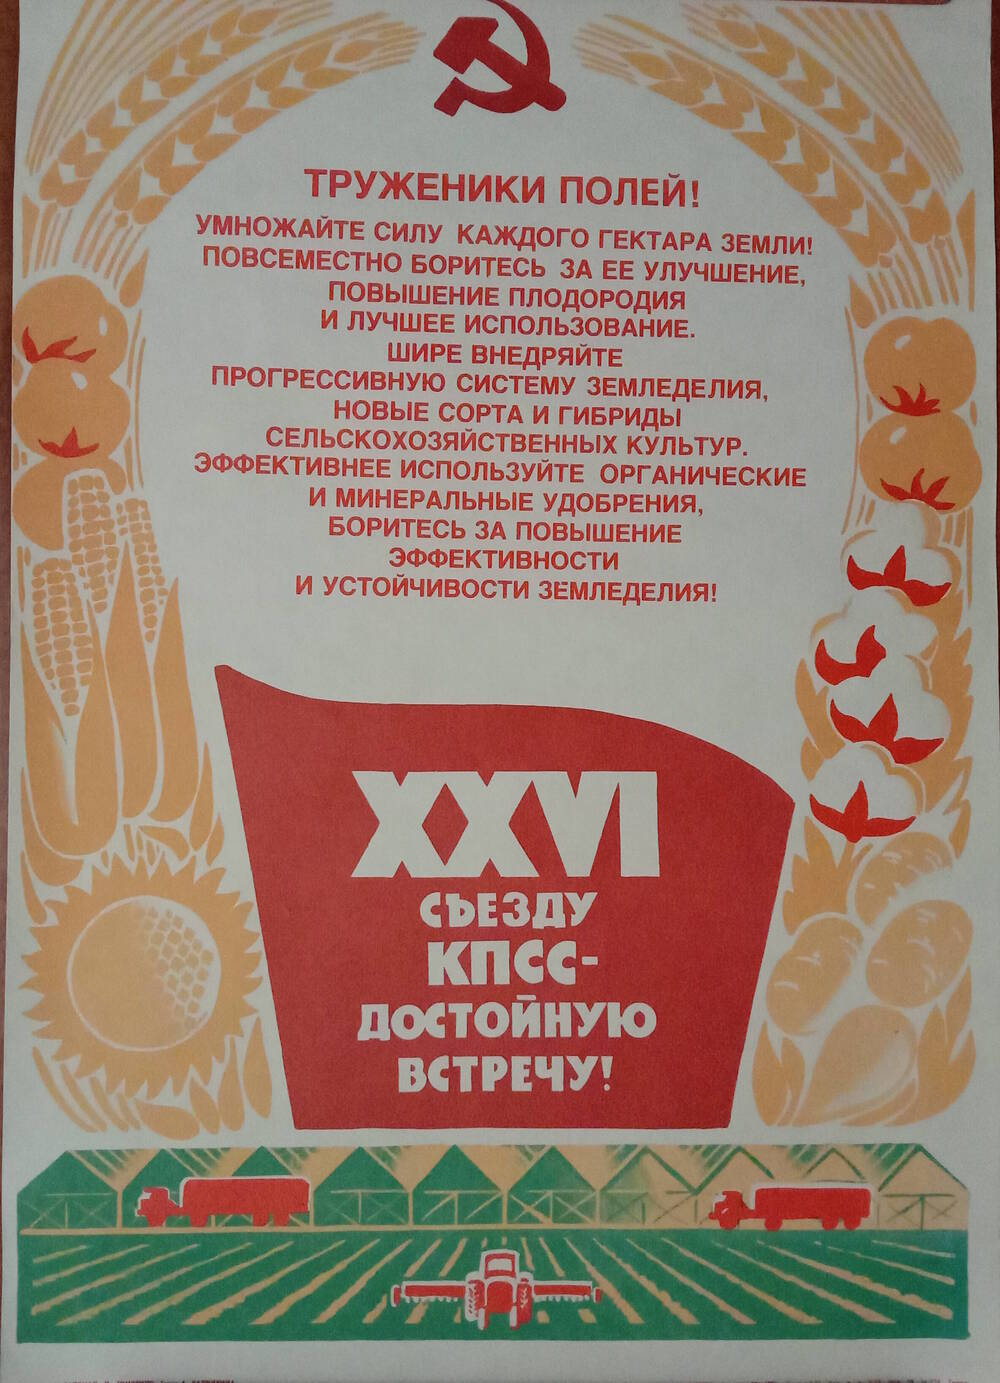 Плакат
«Труженики полей!
XXVI съезду КПСС - достойную встречу!»